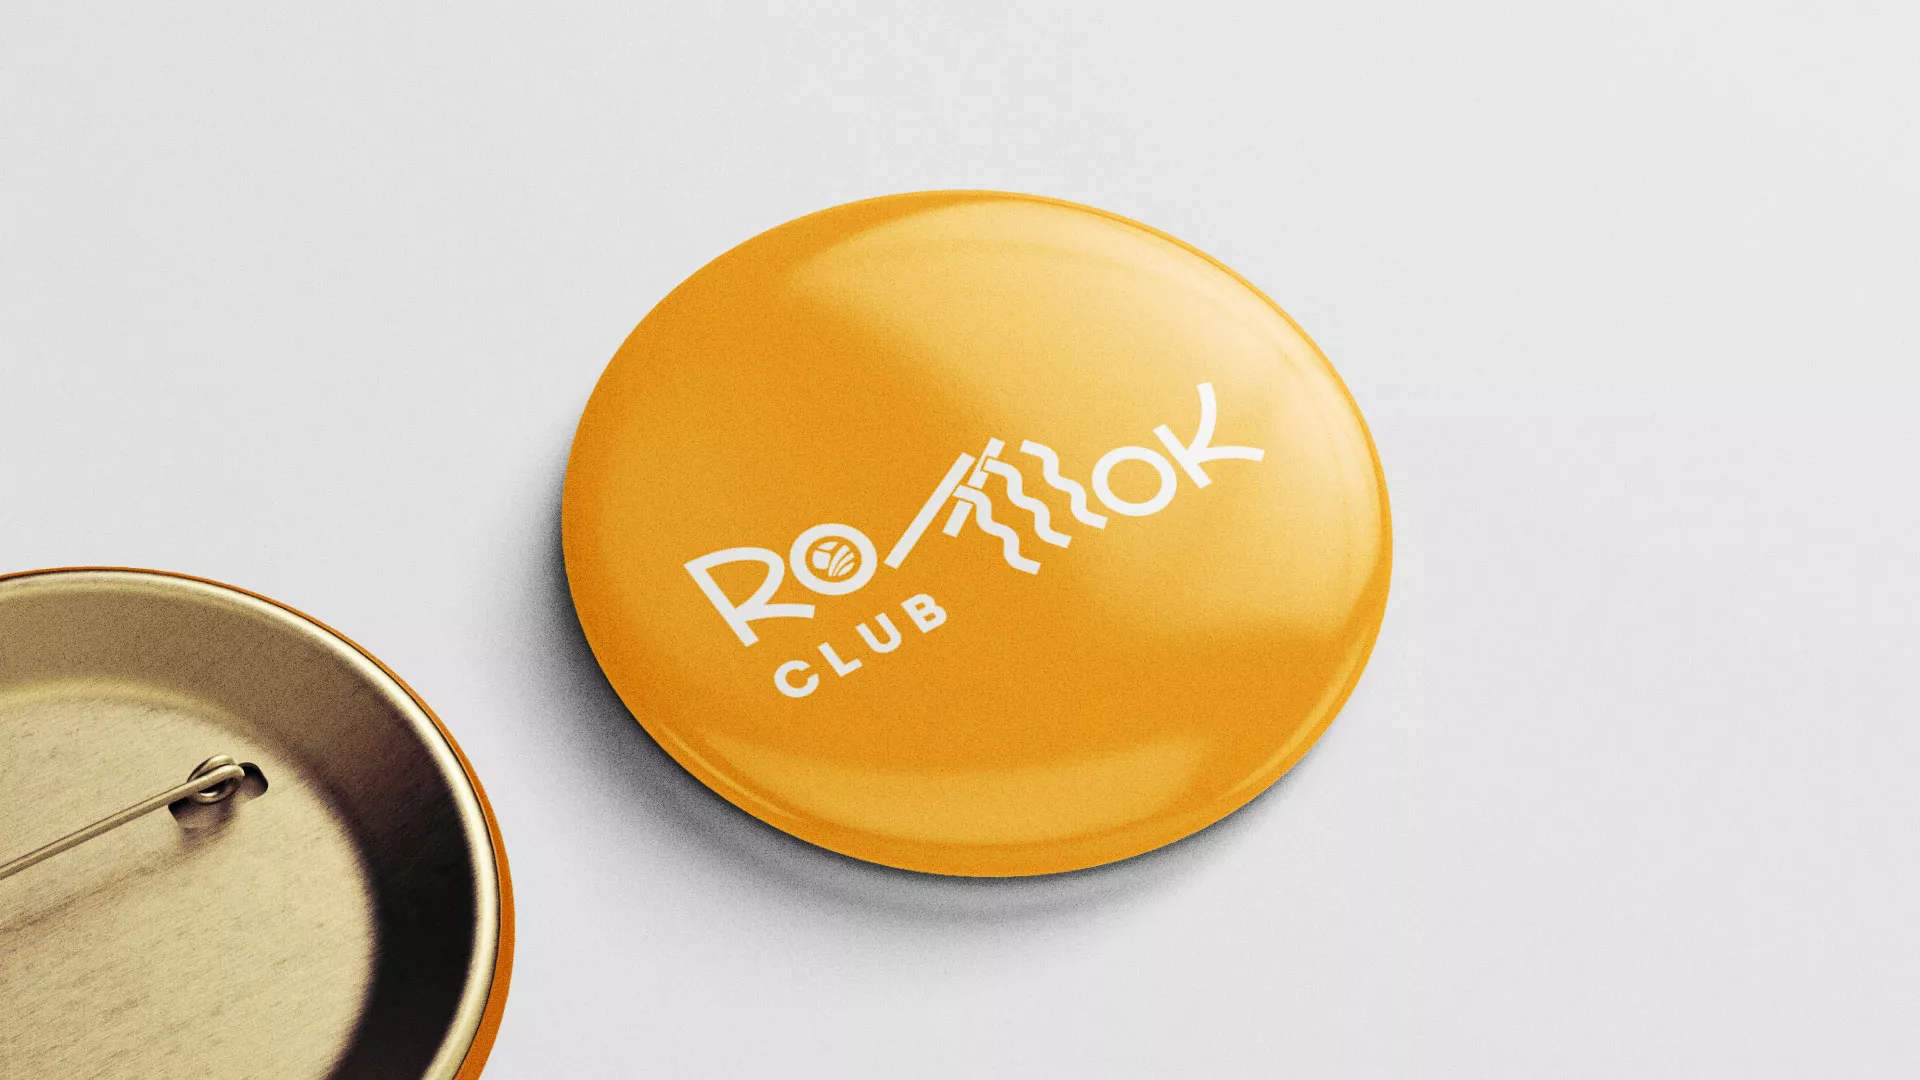 Создание логотипа суши-бара «Roll Wok Club» в Верхнеуральске